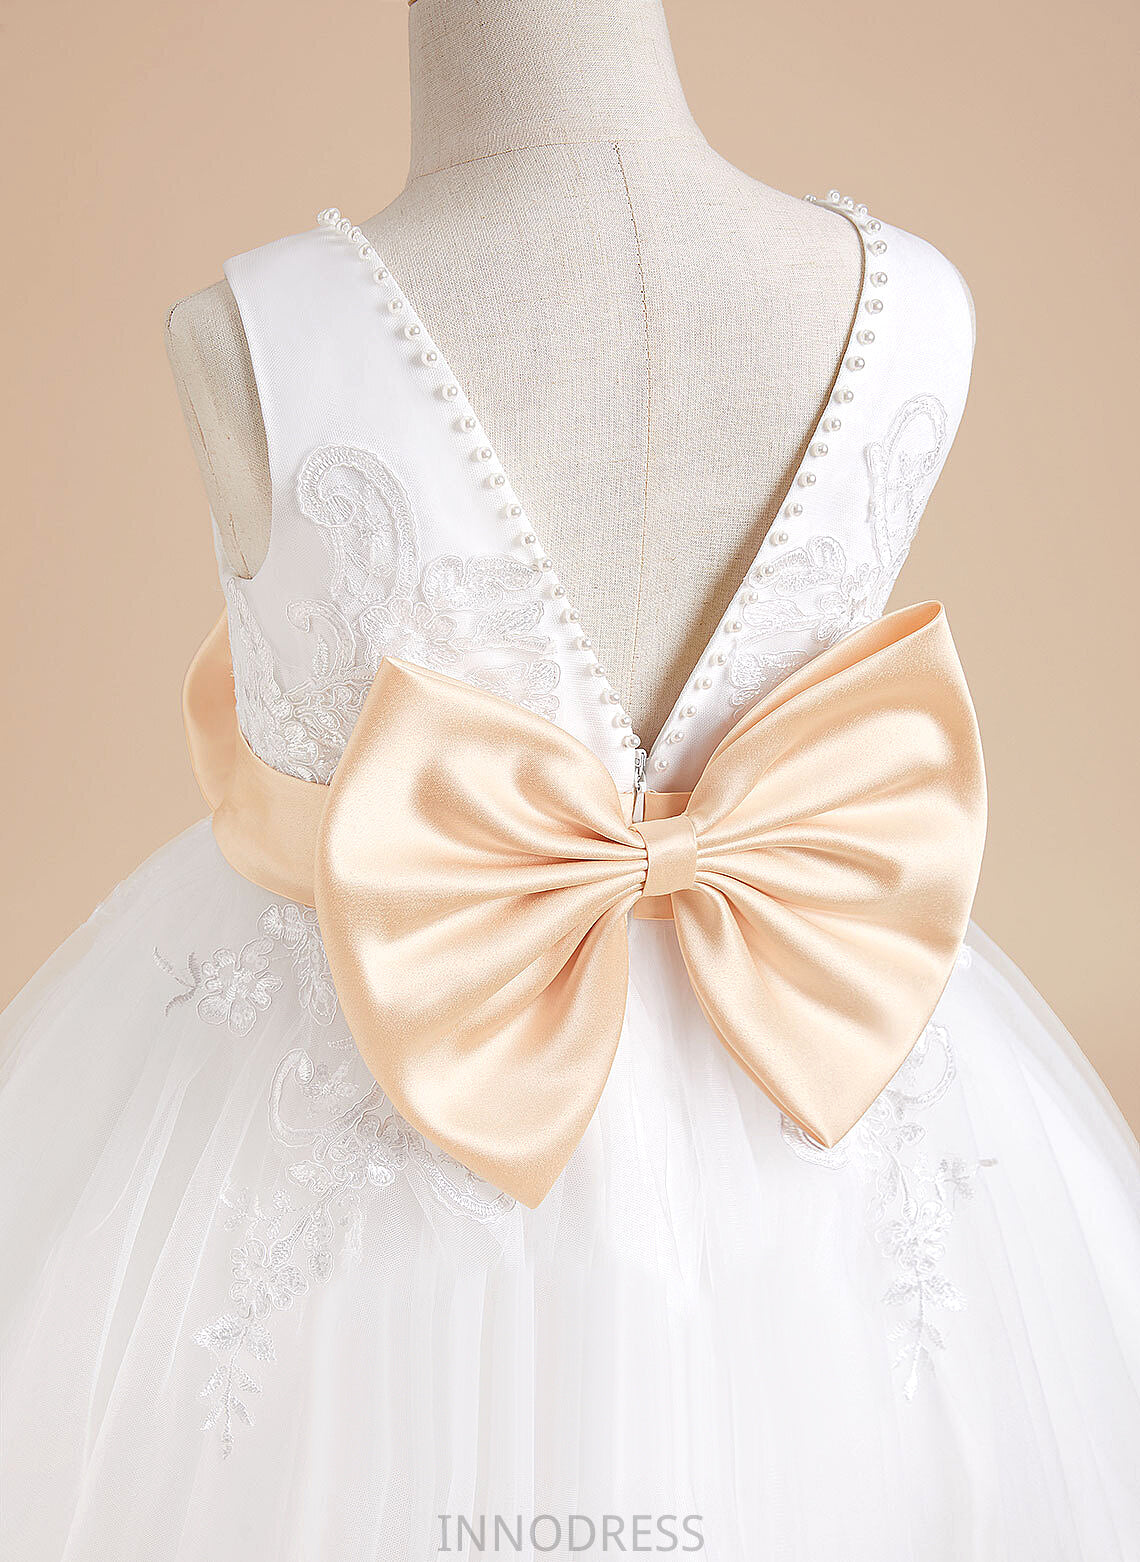 - A-Line Sash/Beading/Bow(s) Sleeveless Elise V-neck Knee-length Tulle/Lace Flower With Girl Dress Flower Girl Dresses